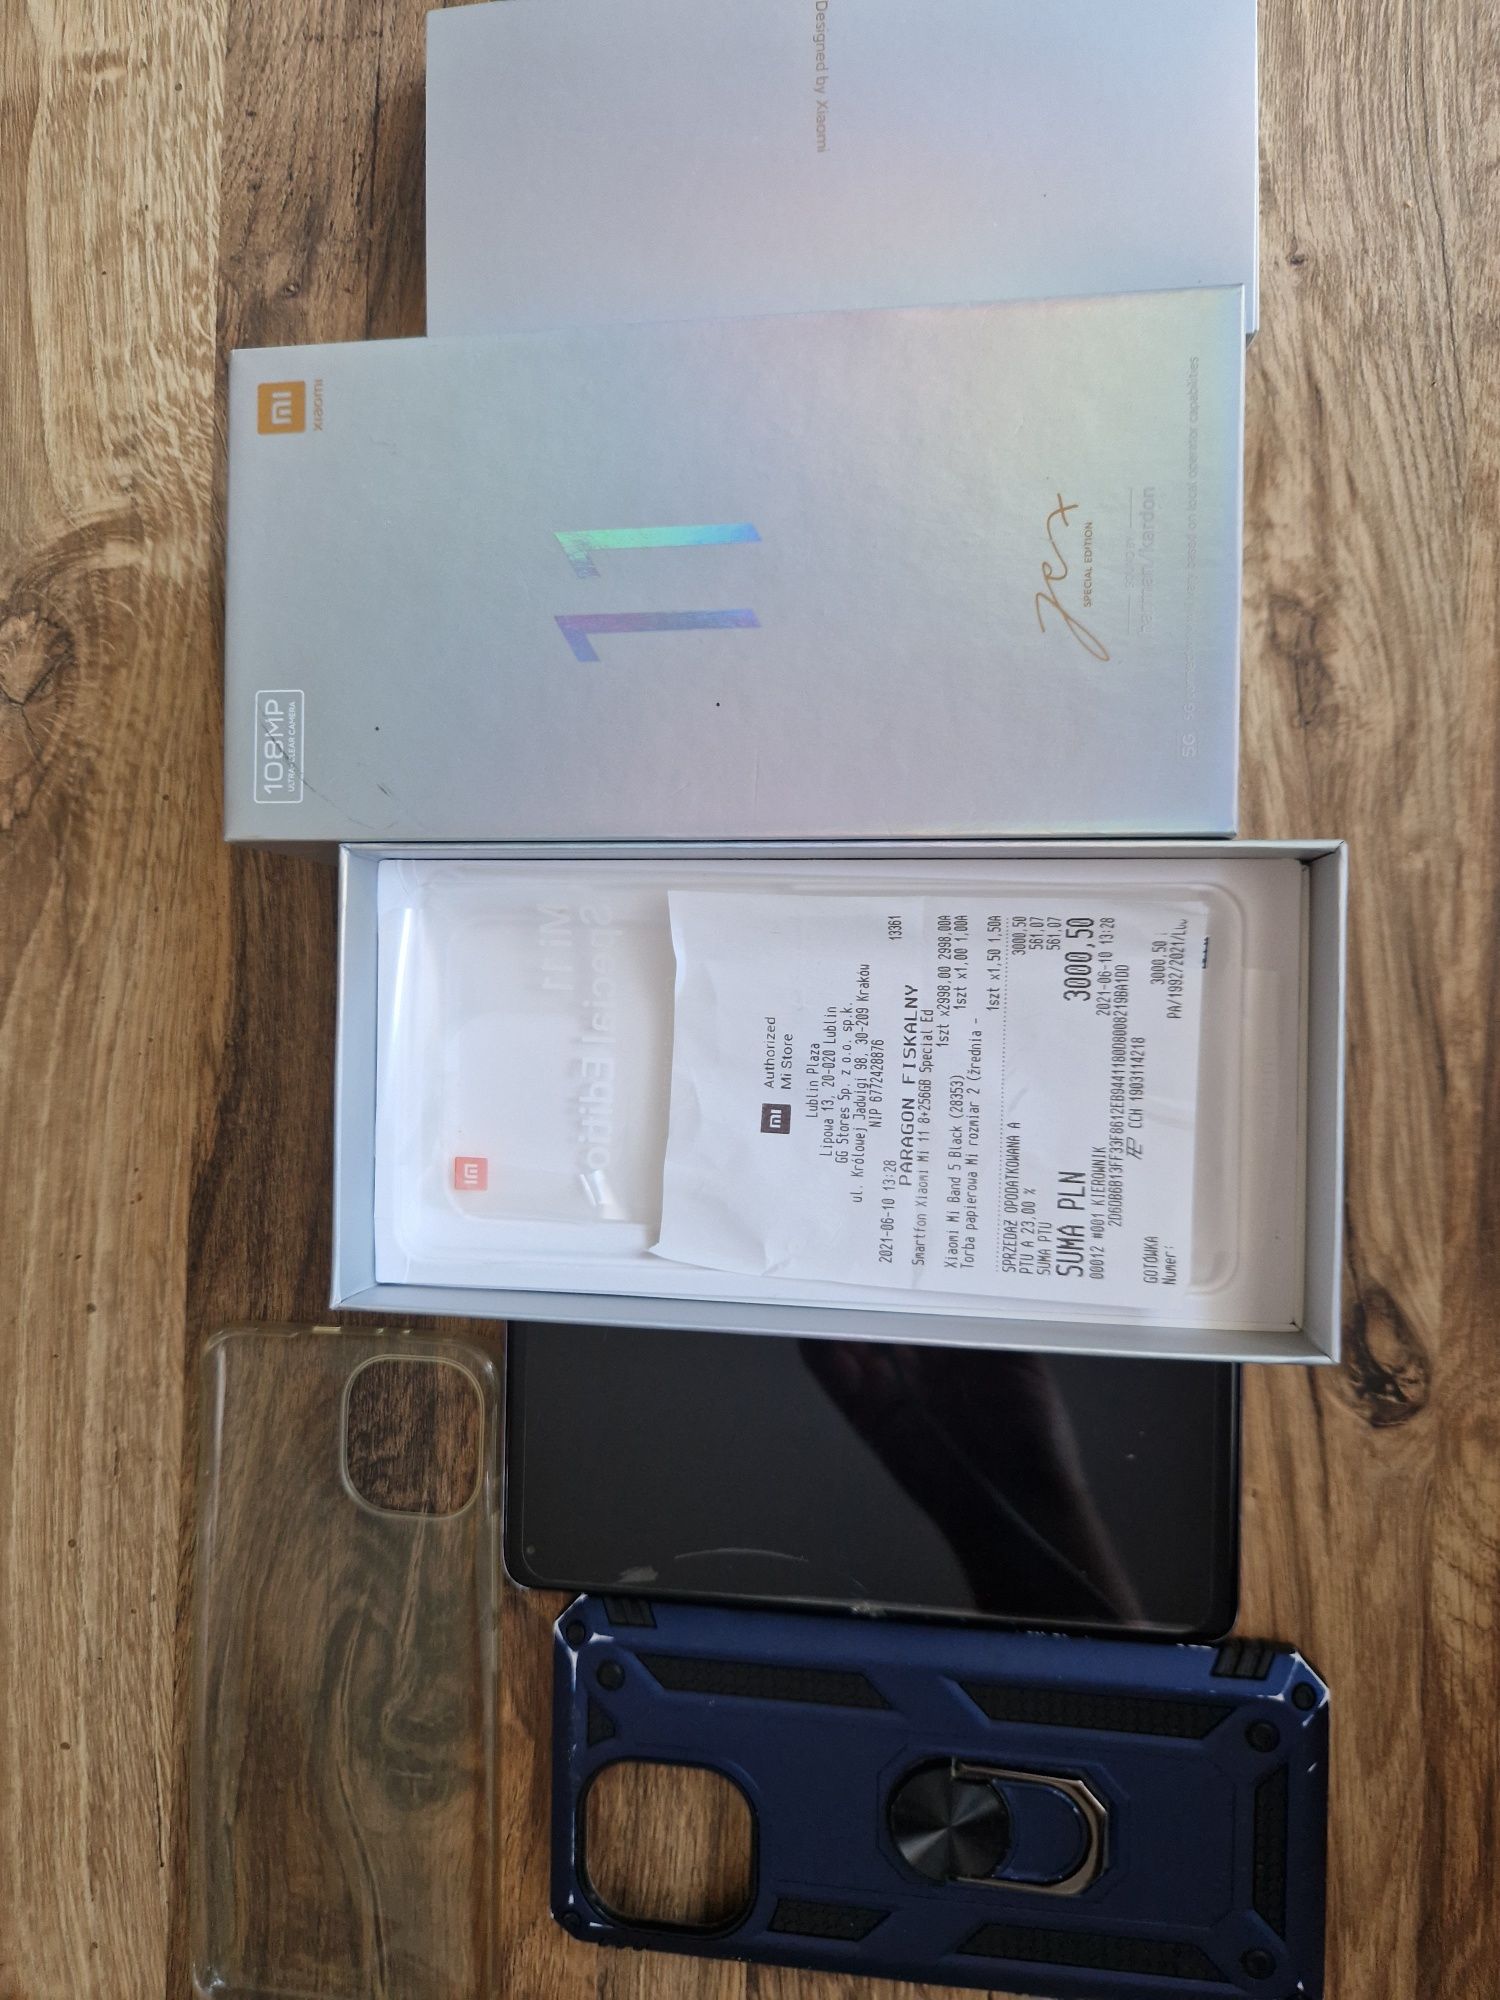 Xiaomi Mi 11 zbita szybka